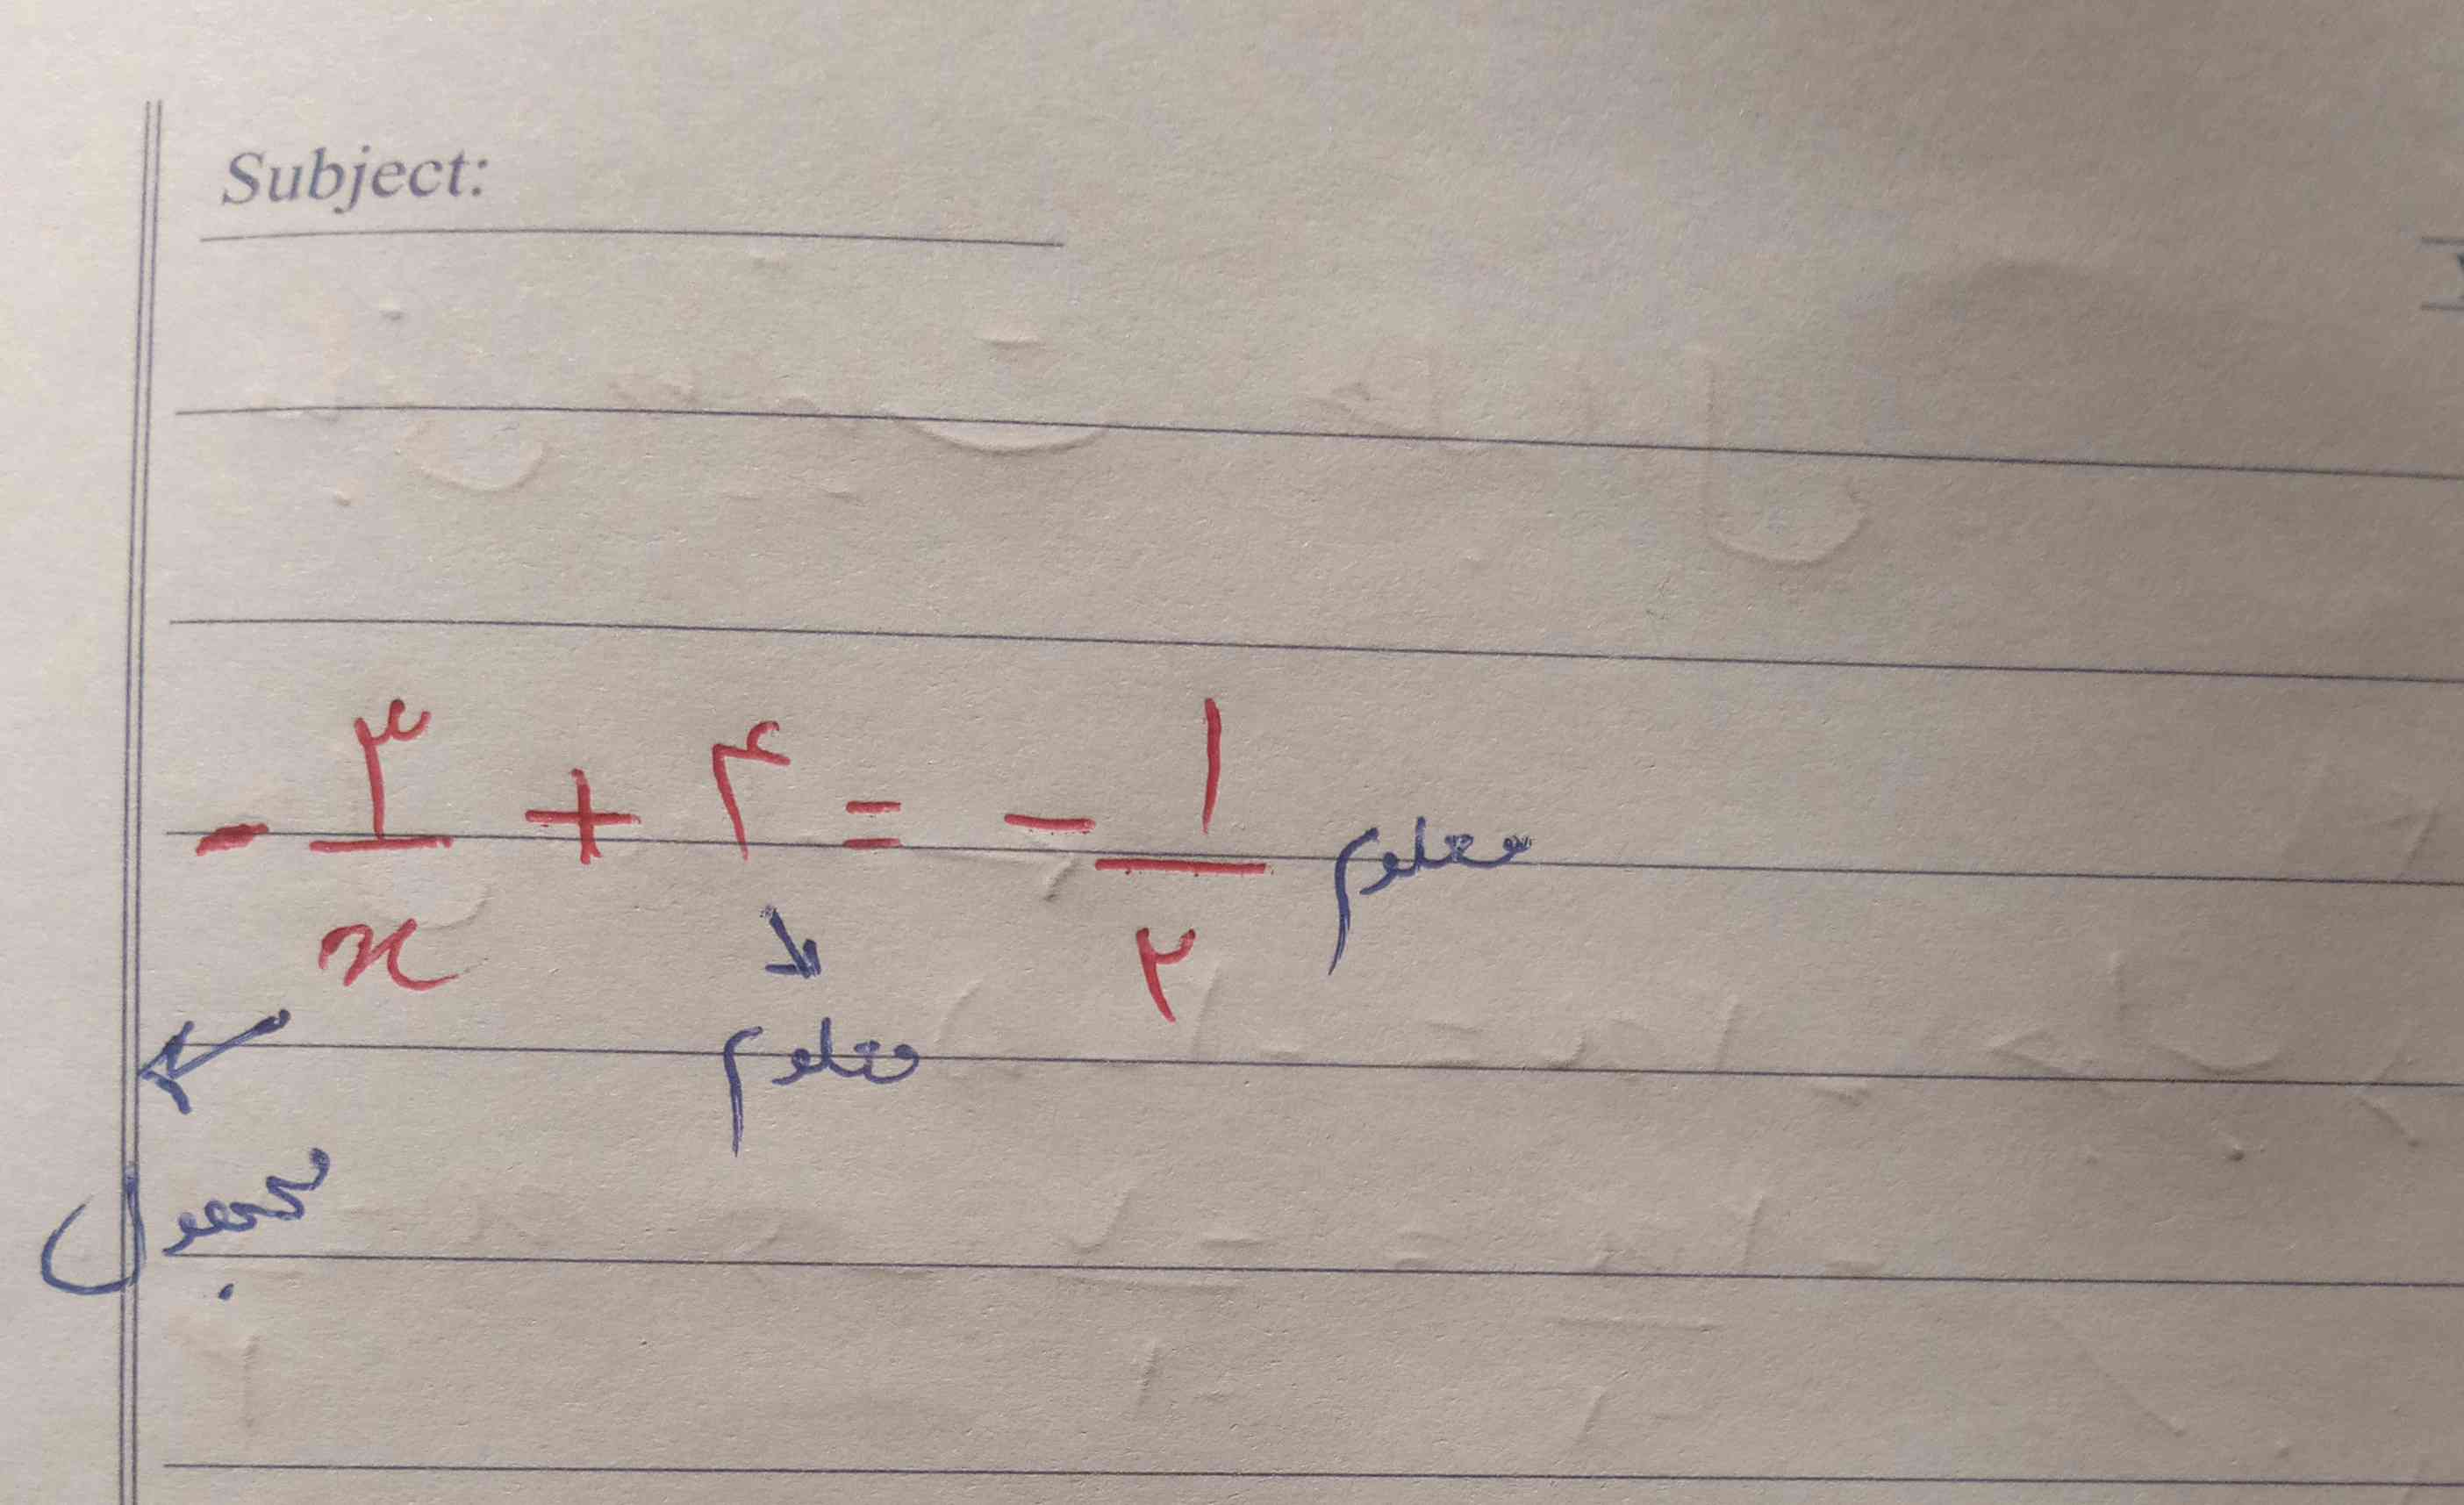 ببخشید این معادله درجه اول را برام توضیح میدید ؟
